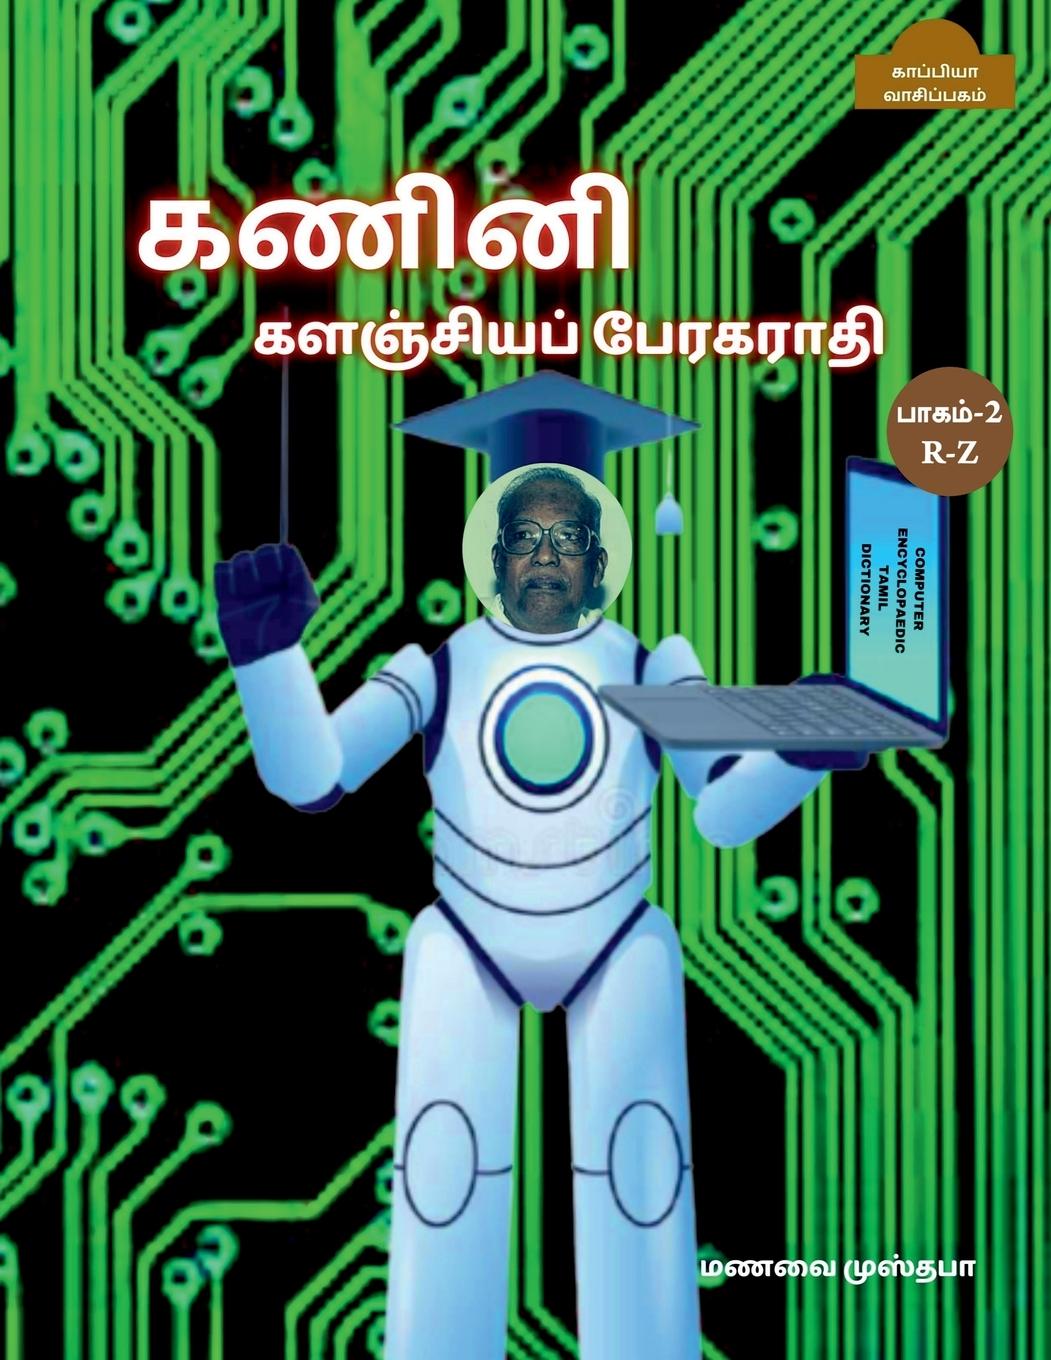 Book Computer Encyclopaedic Tamil Dictionary ( R-Z) / &#2965;&#2979;&#3007;&#2985;&#3007; &#2965;&#2995;&#2974;&#3021;&#2970;&#3007;&#2991;&#2986;&#3021; & 